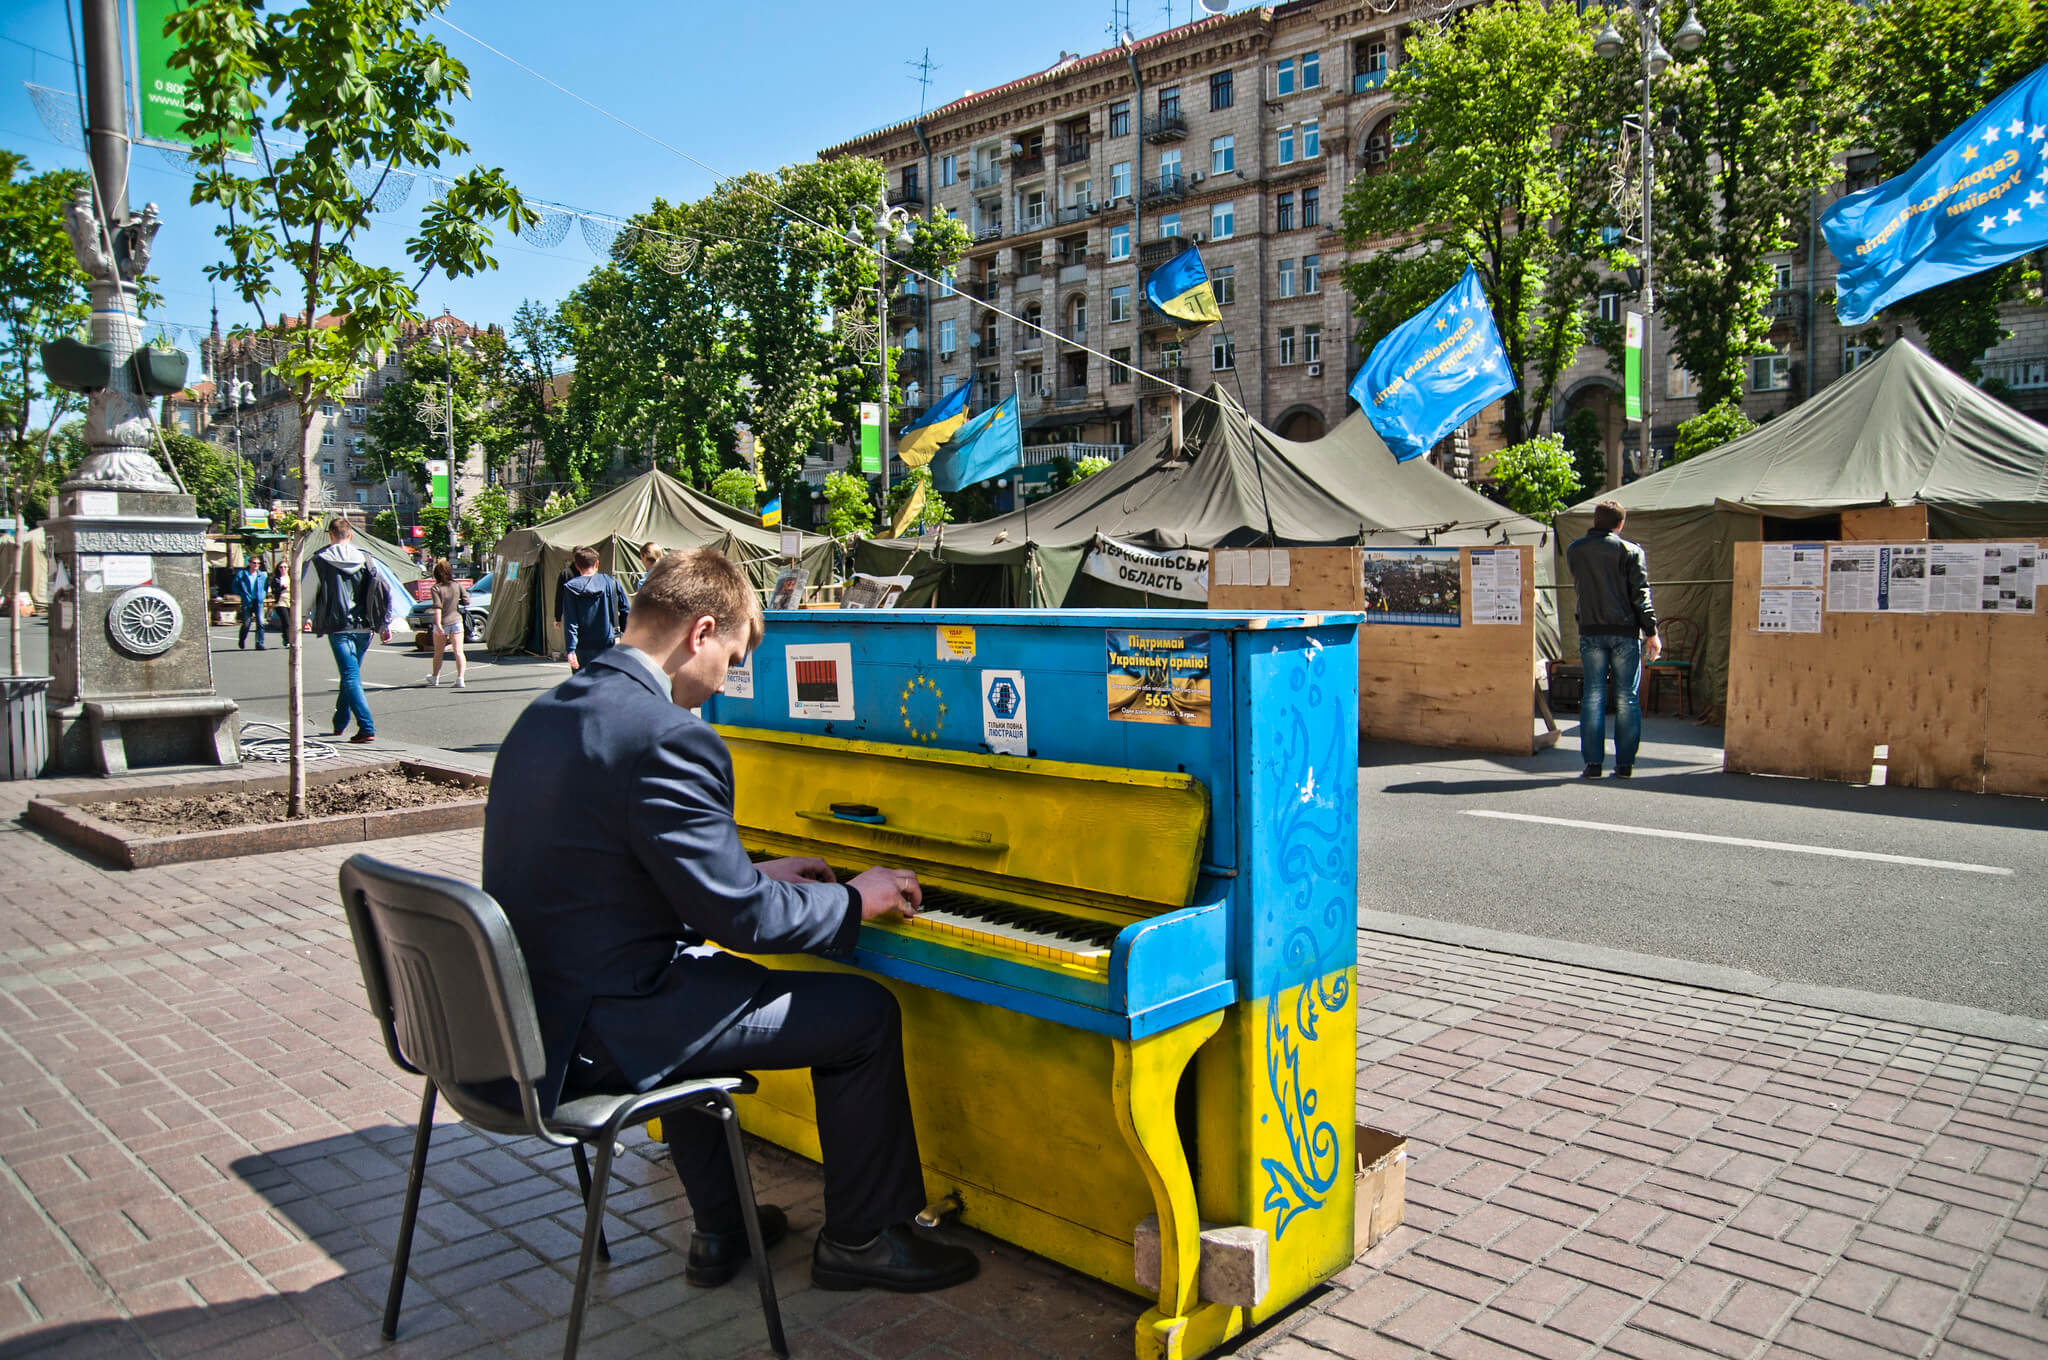 Drost- Pianist in Kyiv tijdens de Maidan-protesten in 2014. Marco Fieber - Flickr